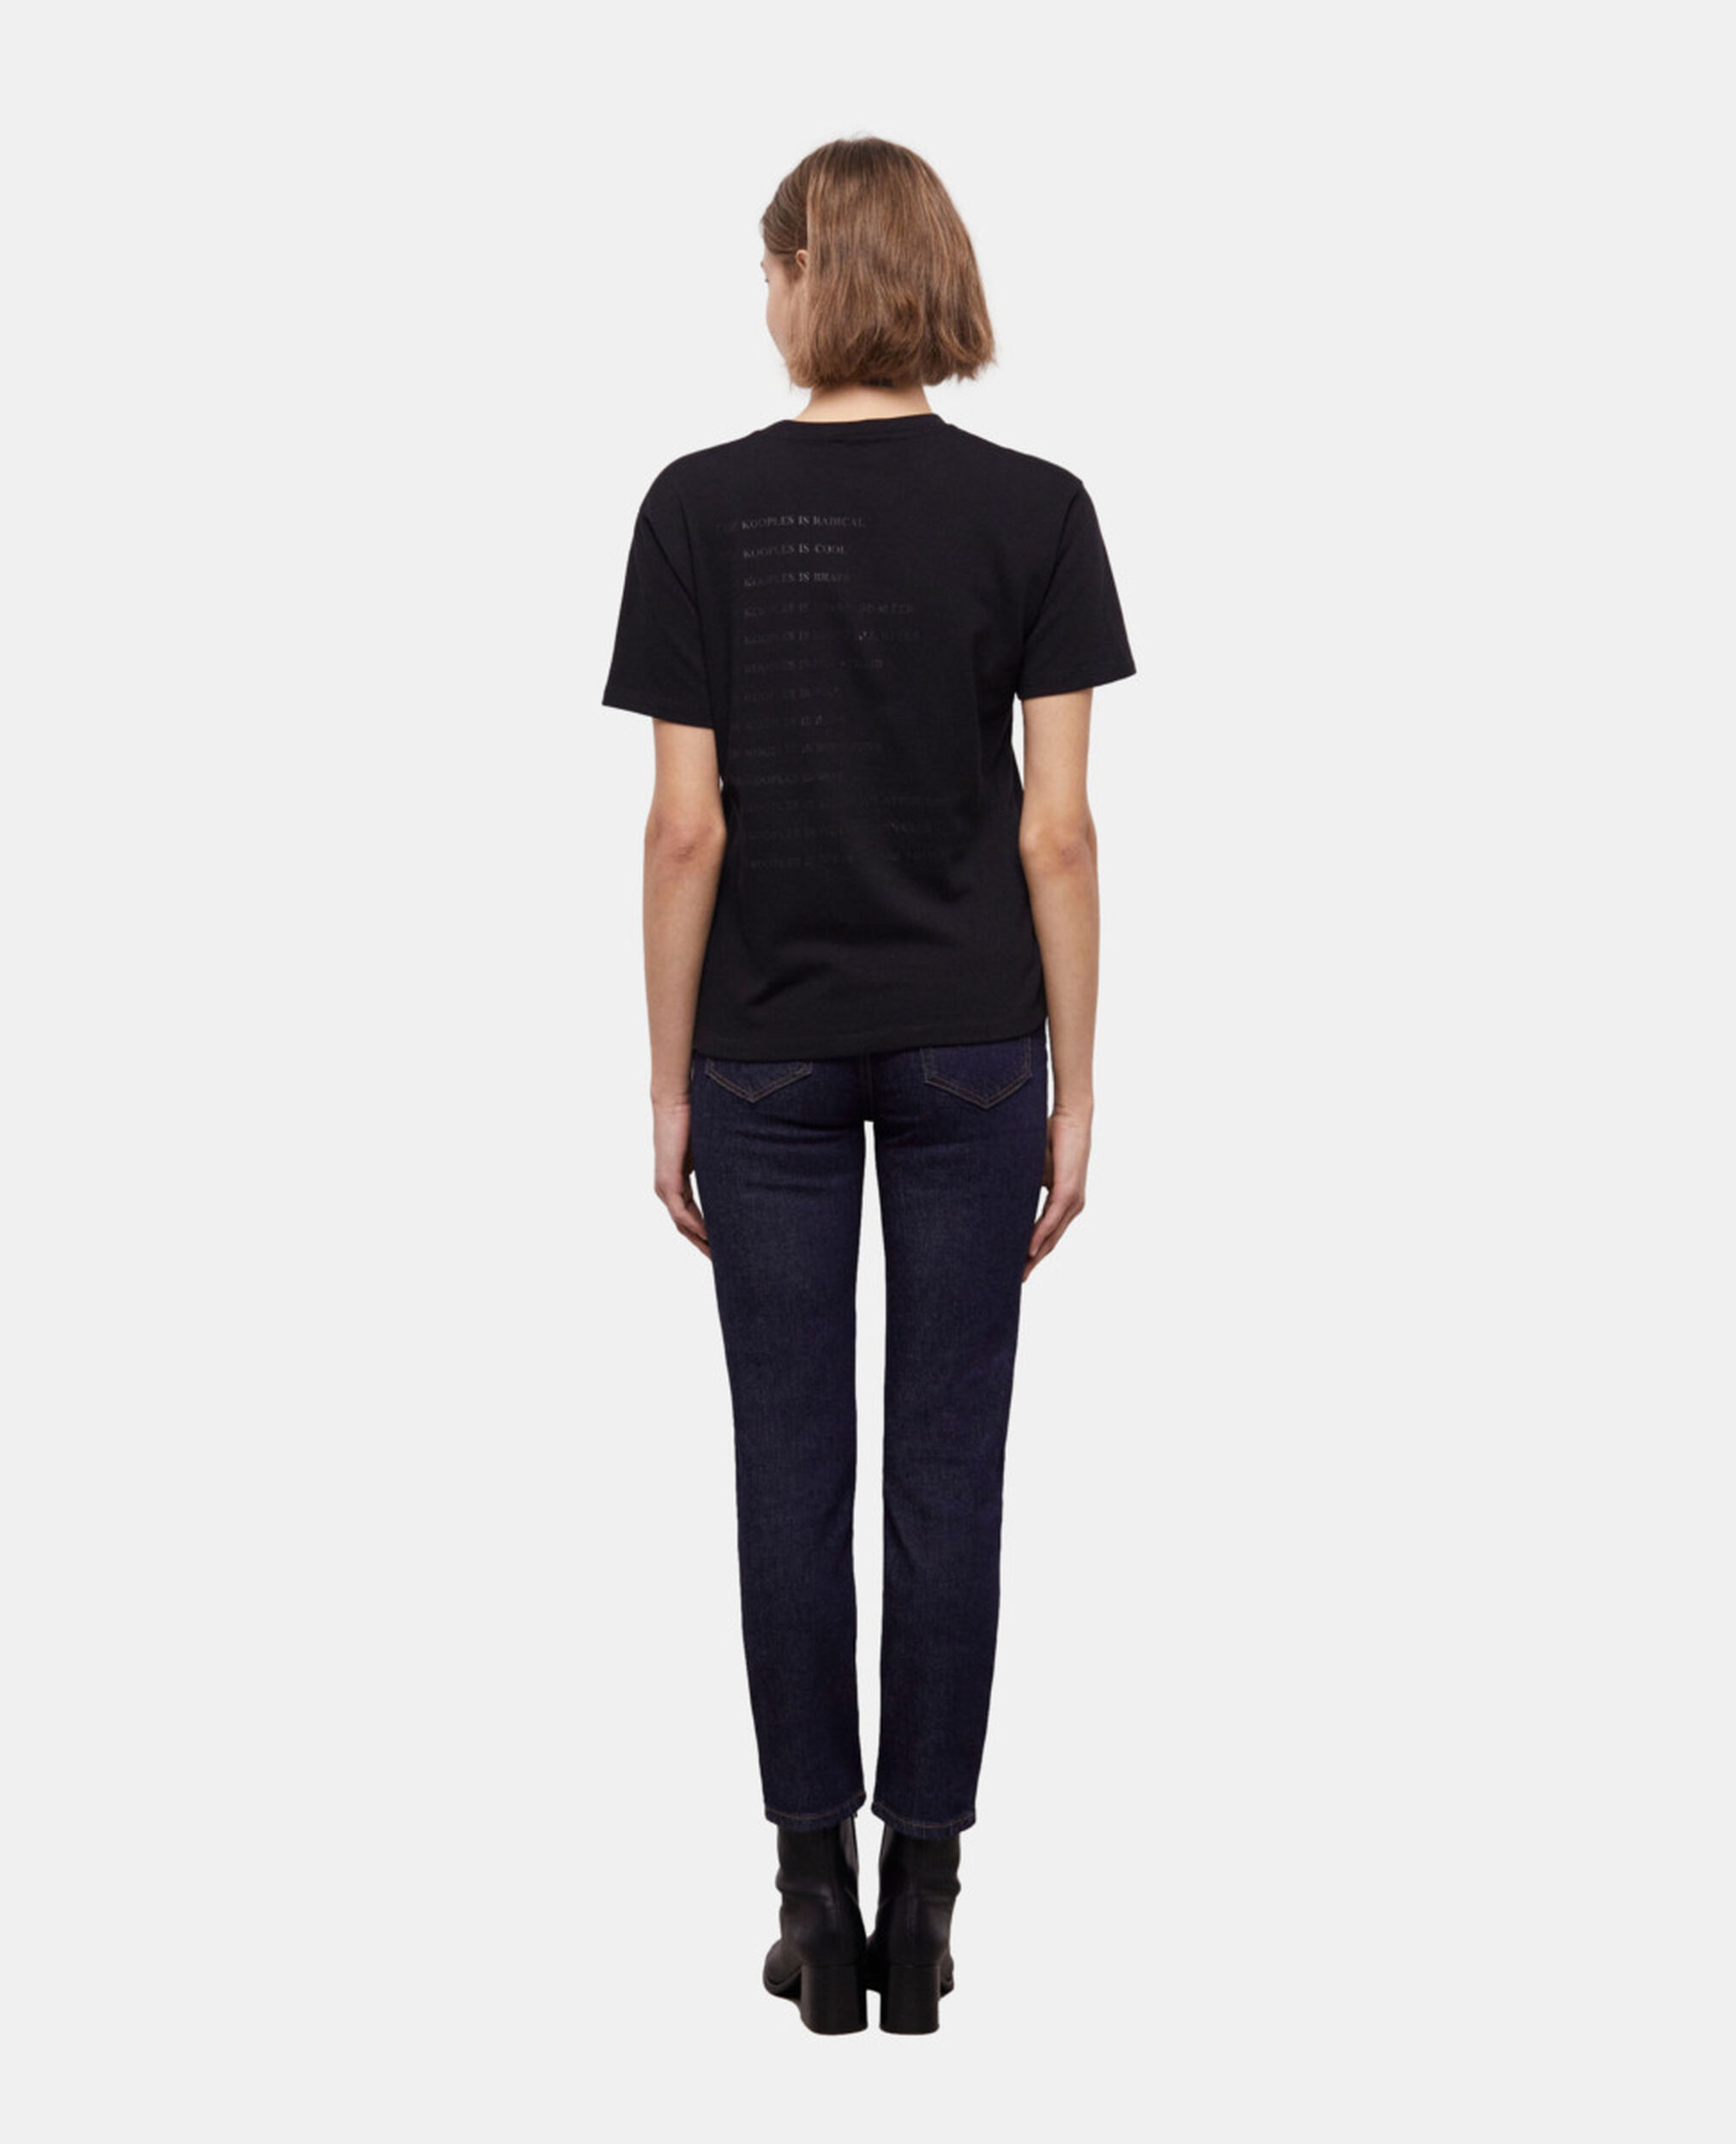 Schwarzes T-Shirt Damen mit Leopardenmuster und "What is"-Schriftzug, BLACK, hi-res image number null